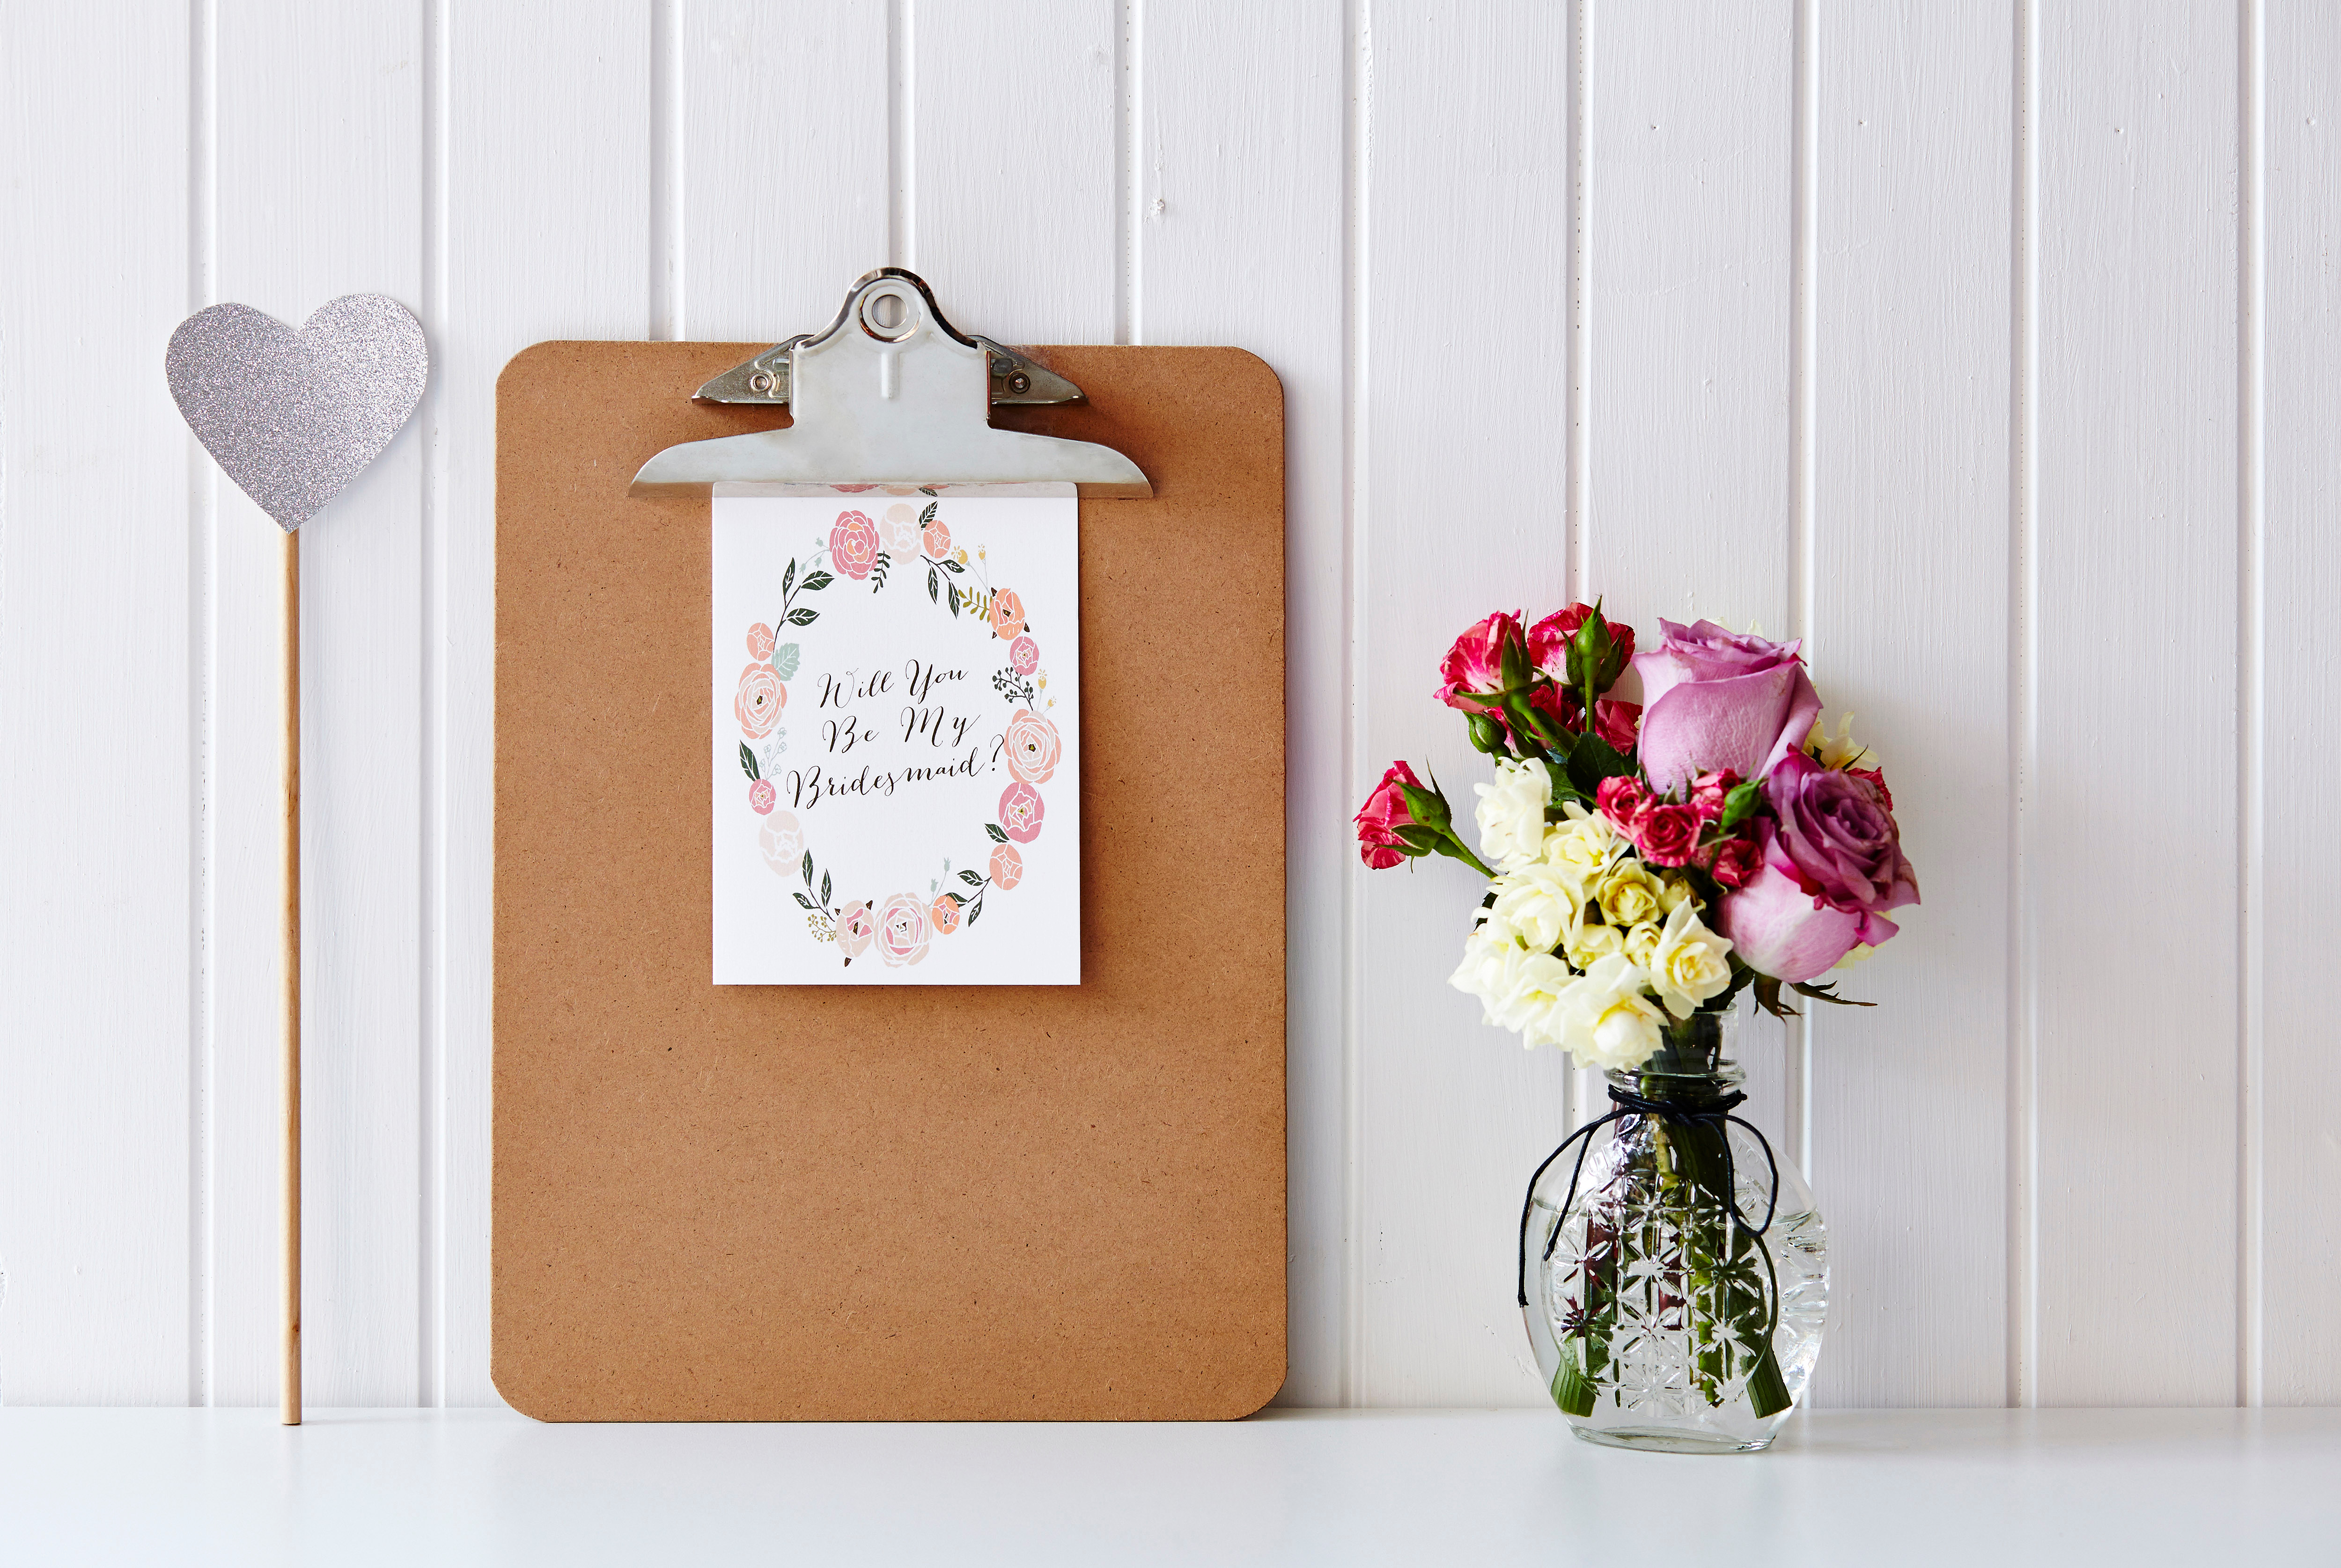 Ein Klemmbrett mit einer Brautjungfernkarte | Quelle: Shutterstock